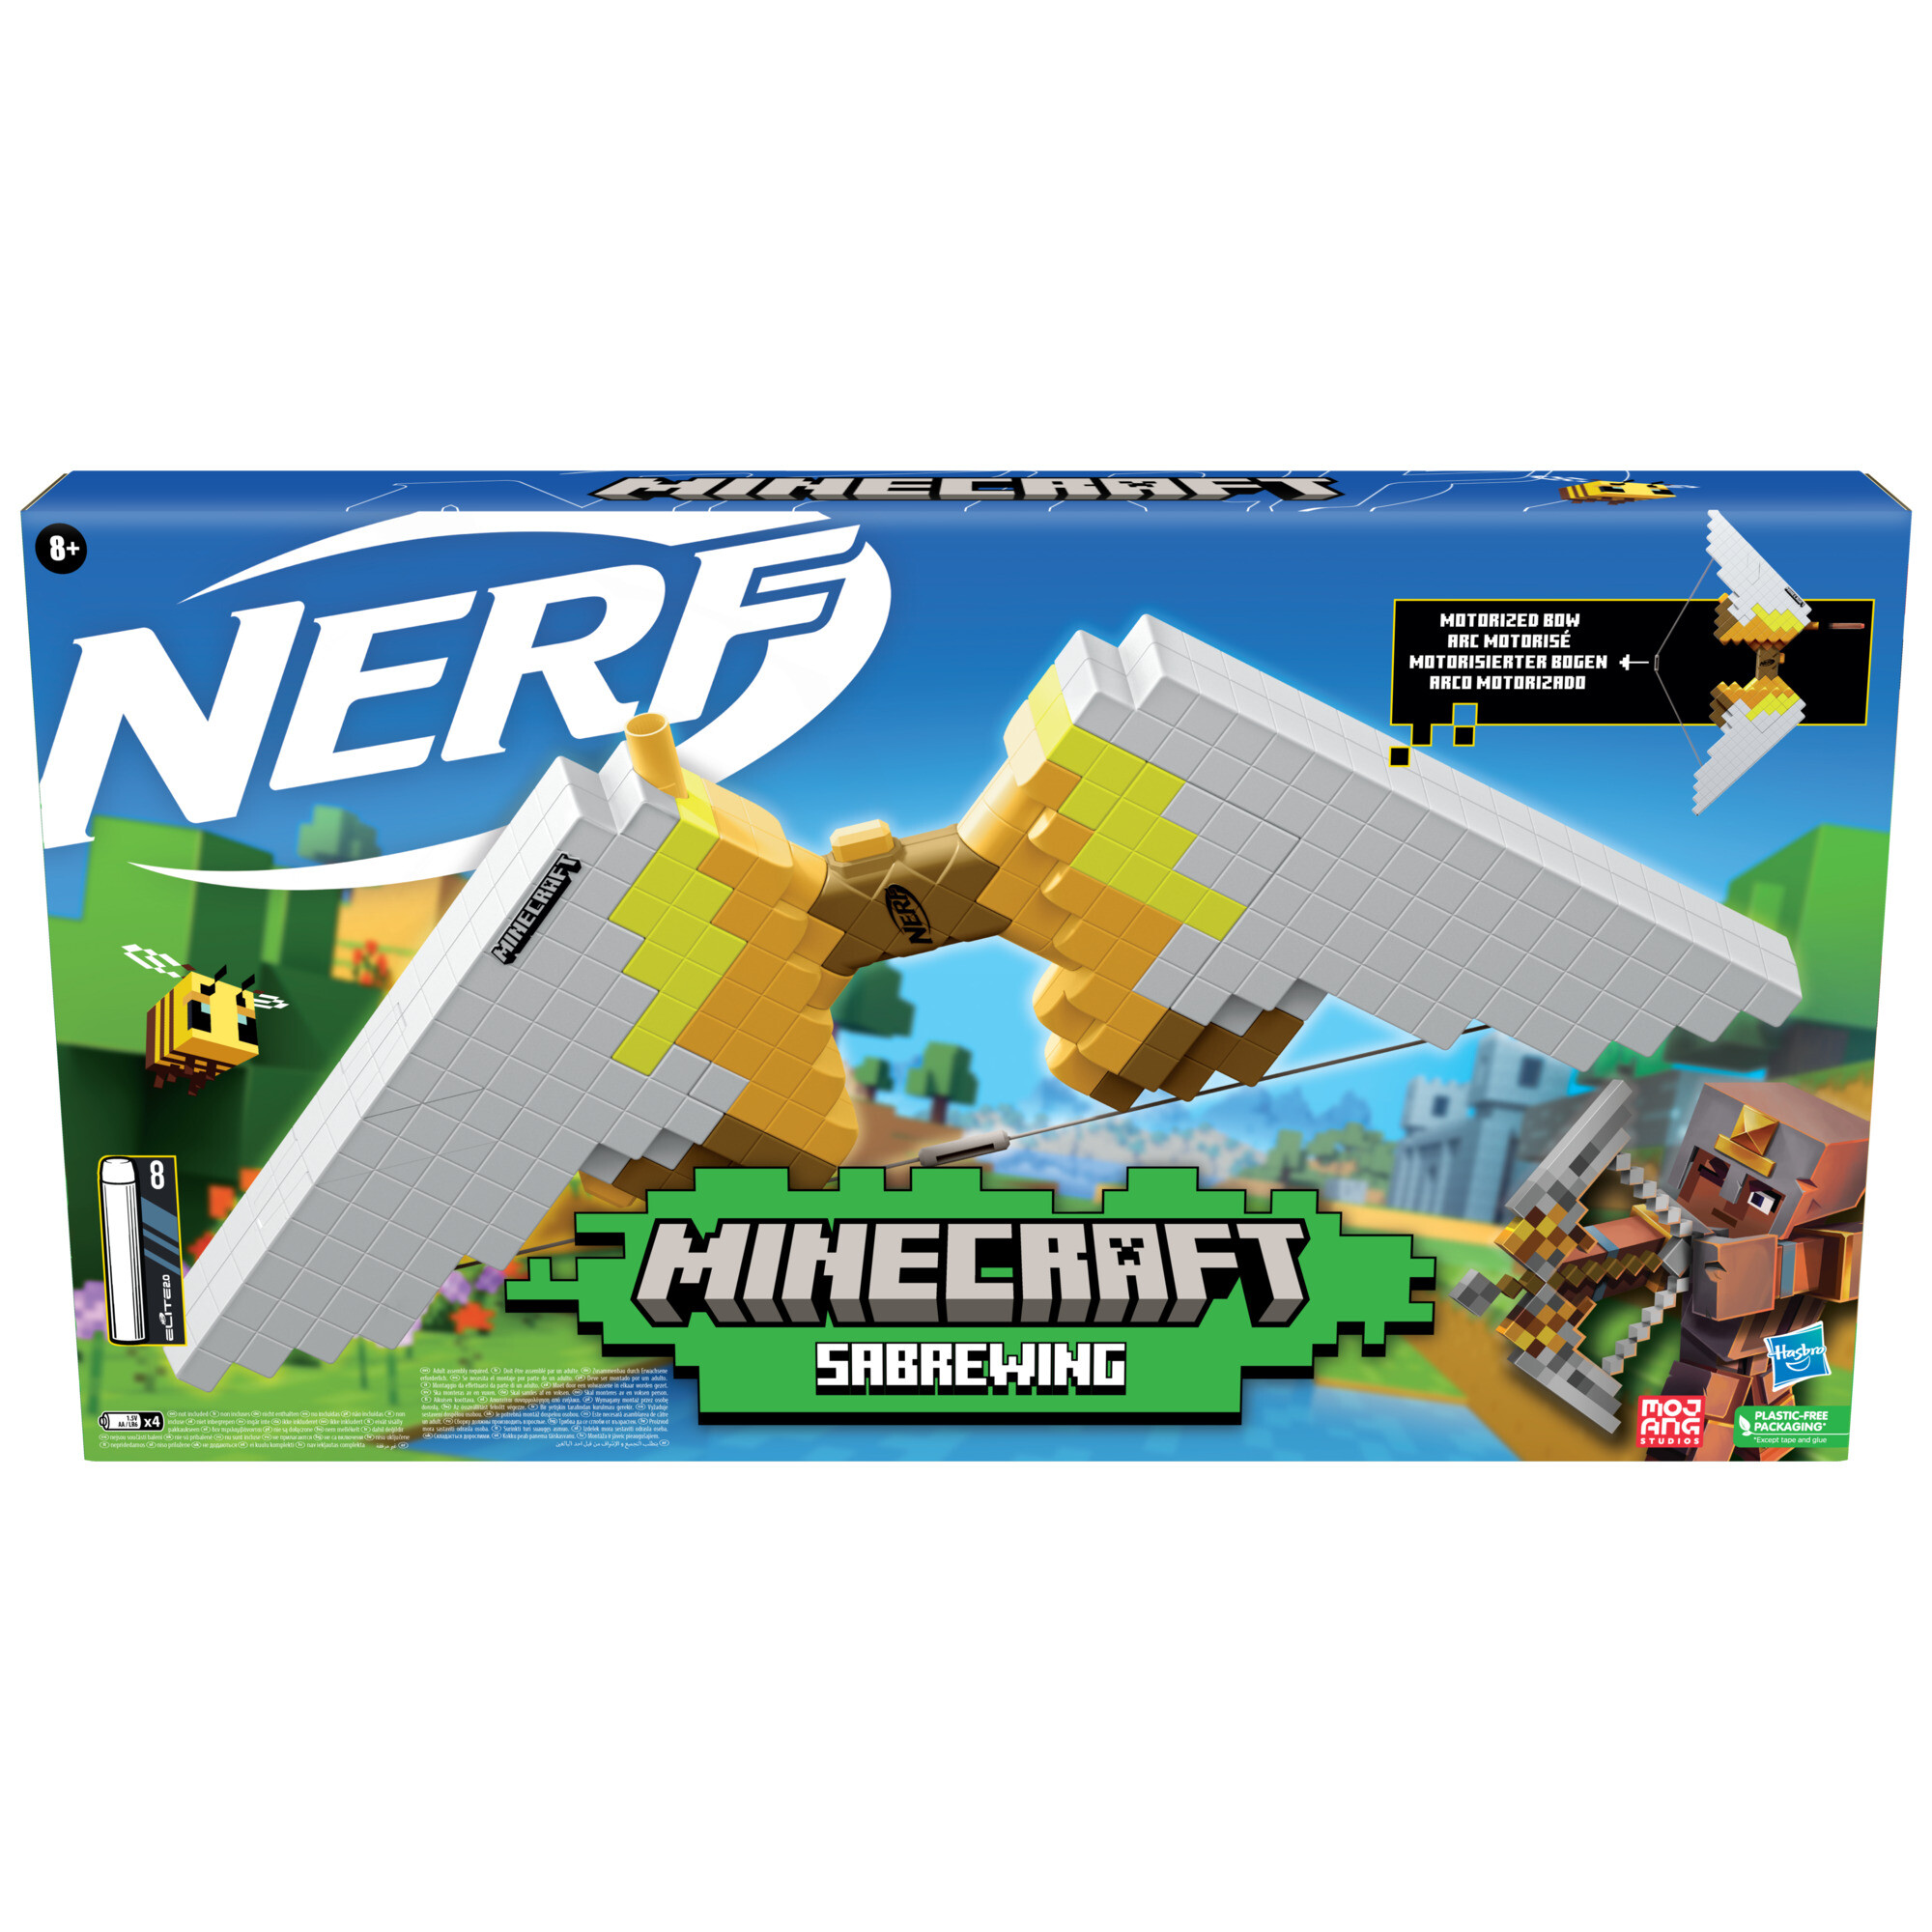 Nerf minecraft - sabrewing, arco motorizzato lancia i dardi, design ispirato al videogioco, include 8 dardi nerf elite - NERF